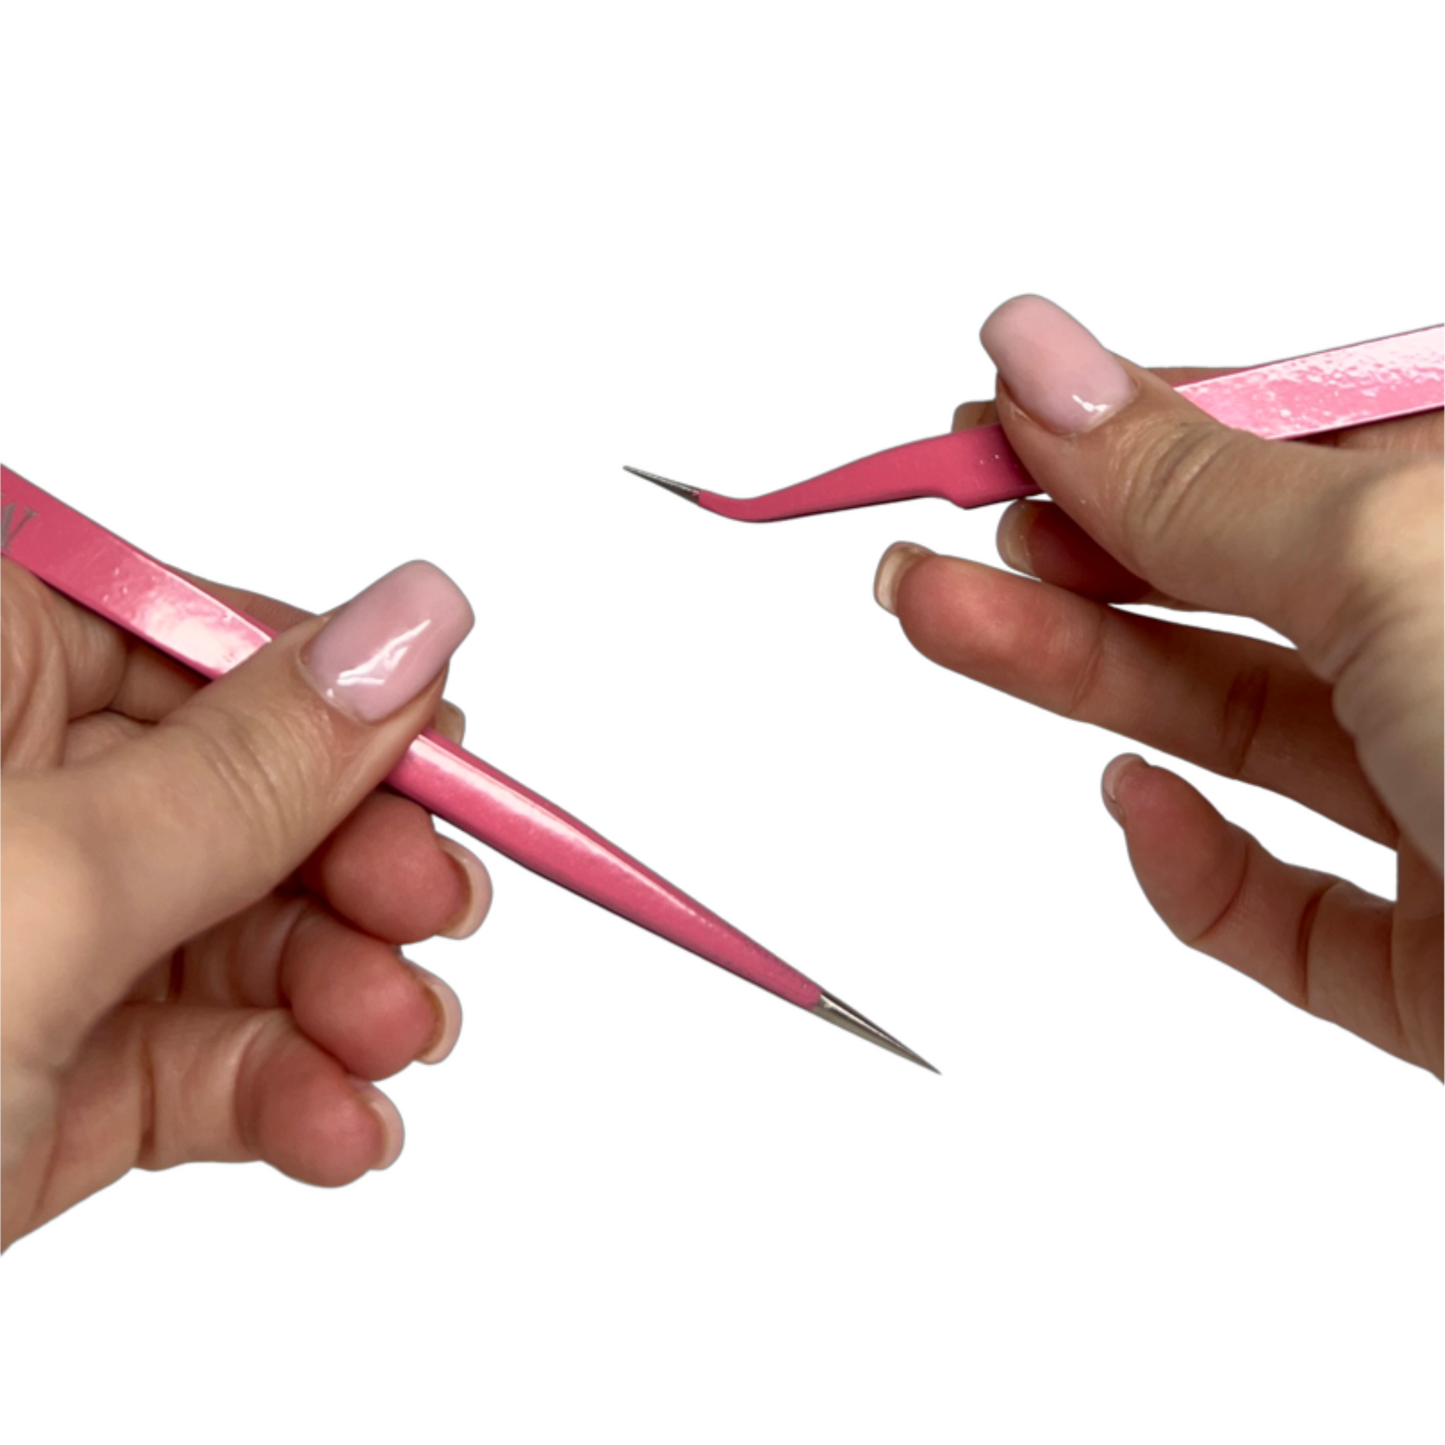 Wimperpincetten roze - tweezers